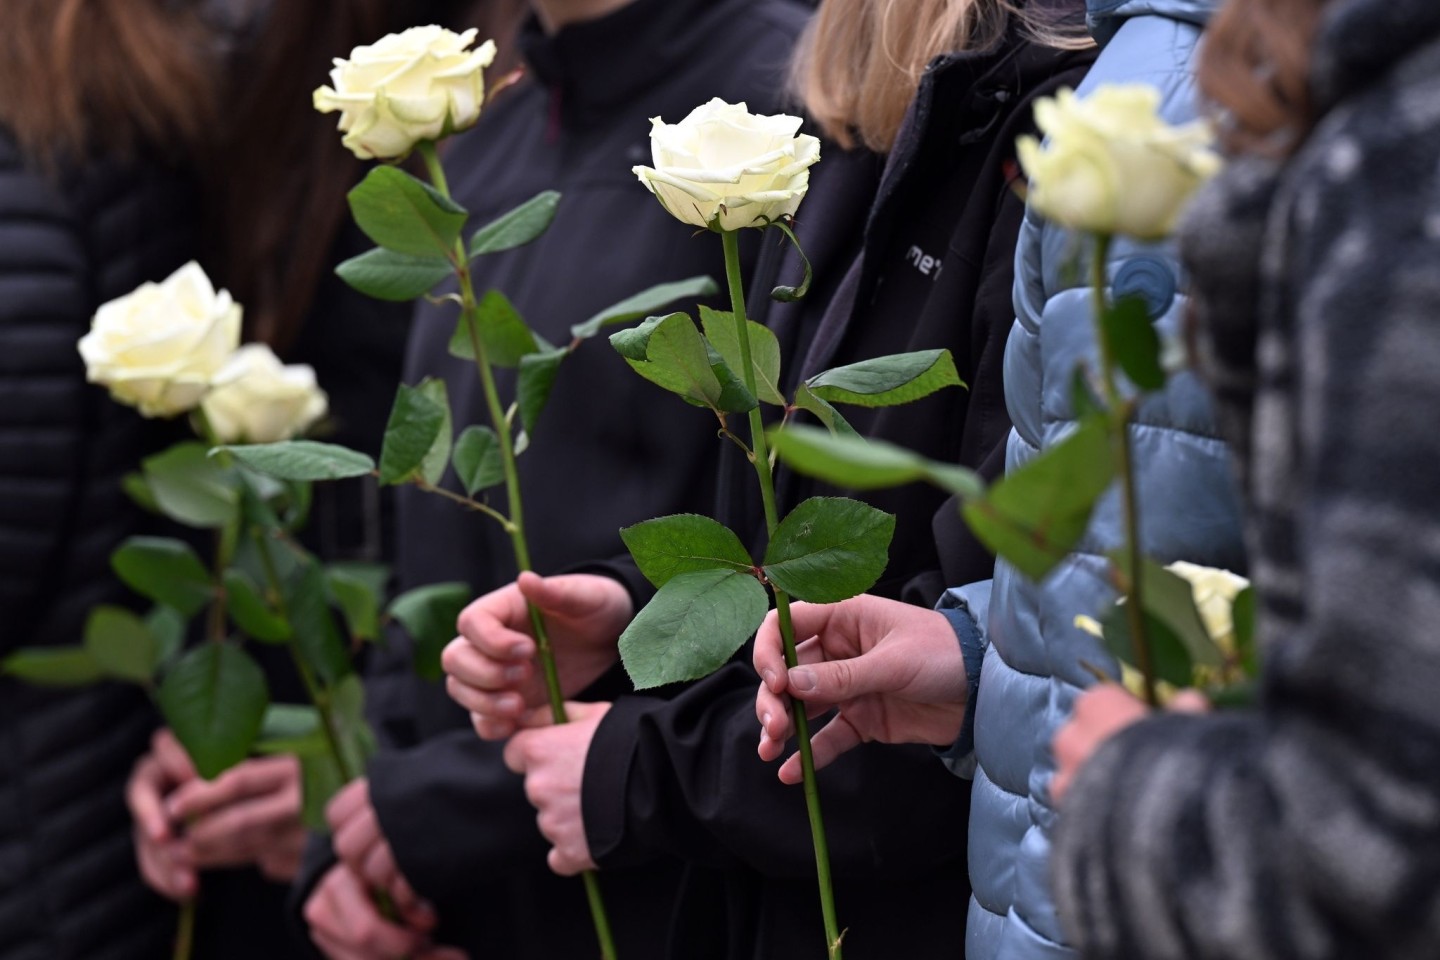 Schülerinnen und Schüler gedenken mit weißen Rosen der Opfer.